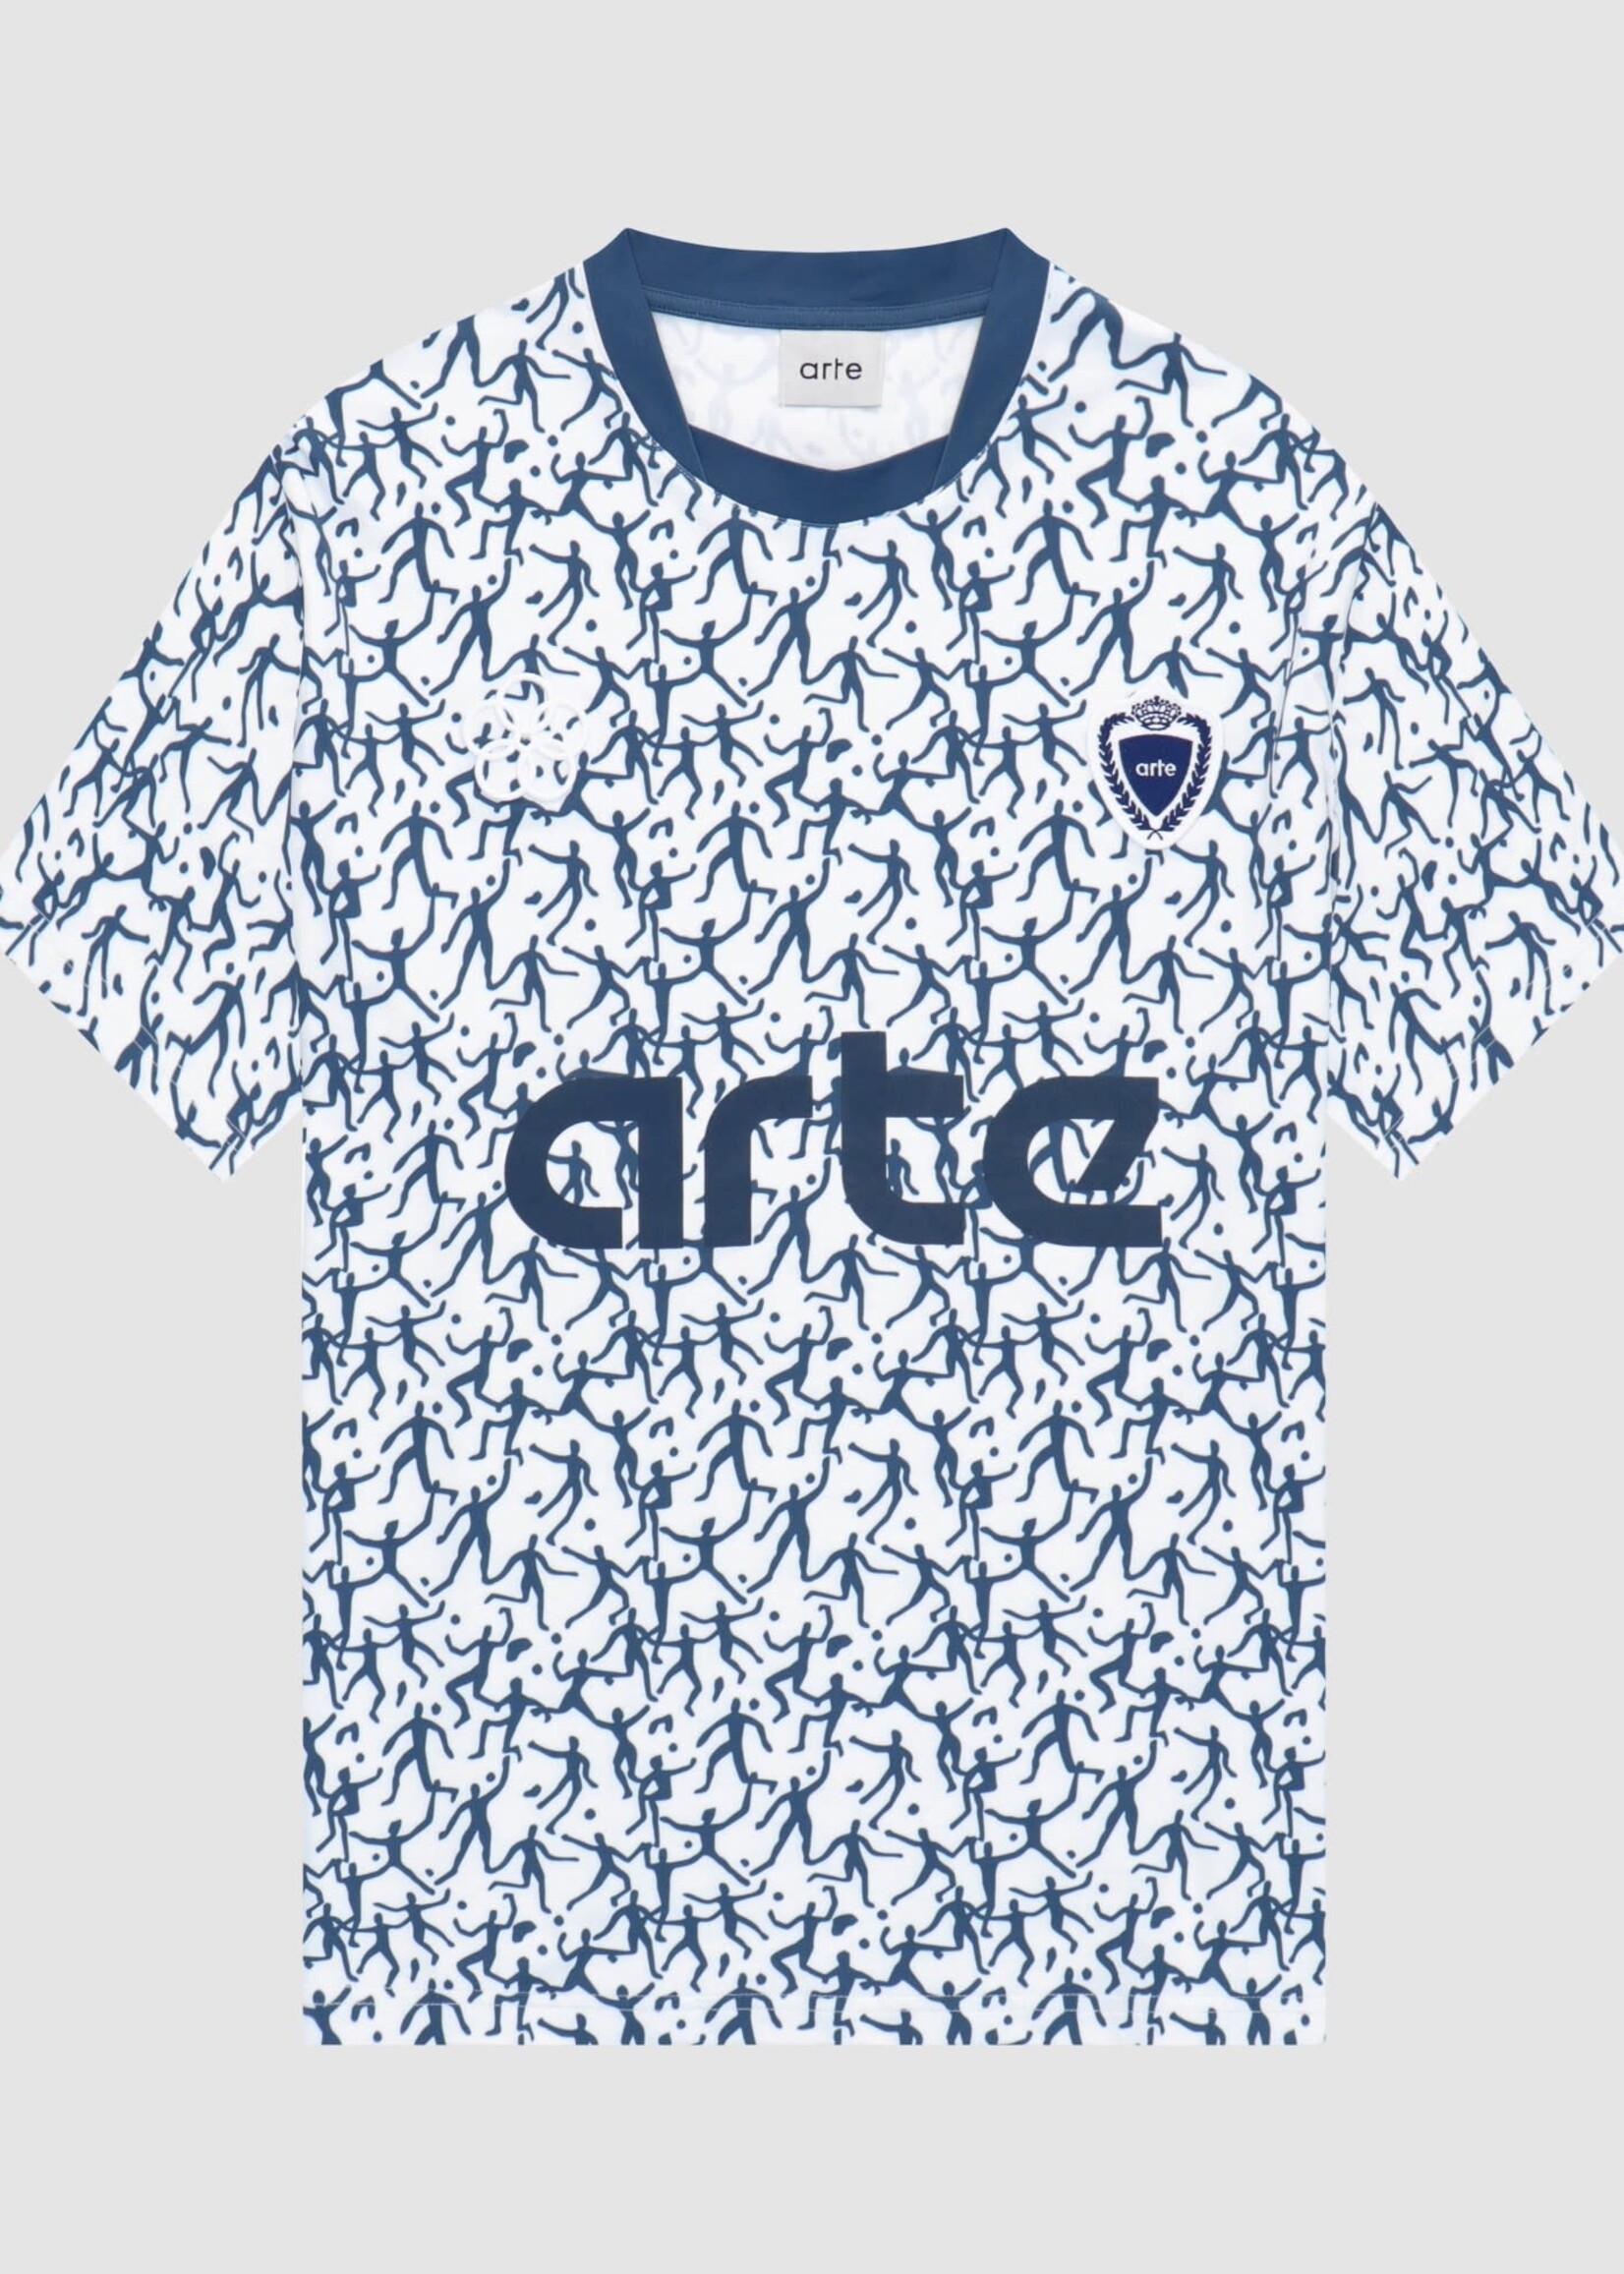 Arte Arte Silvester shirt white/navy